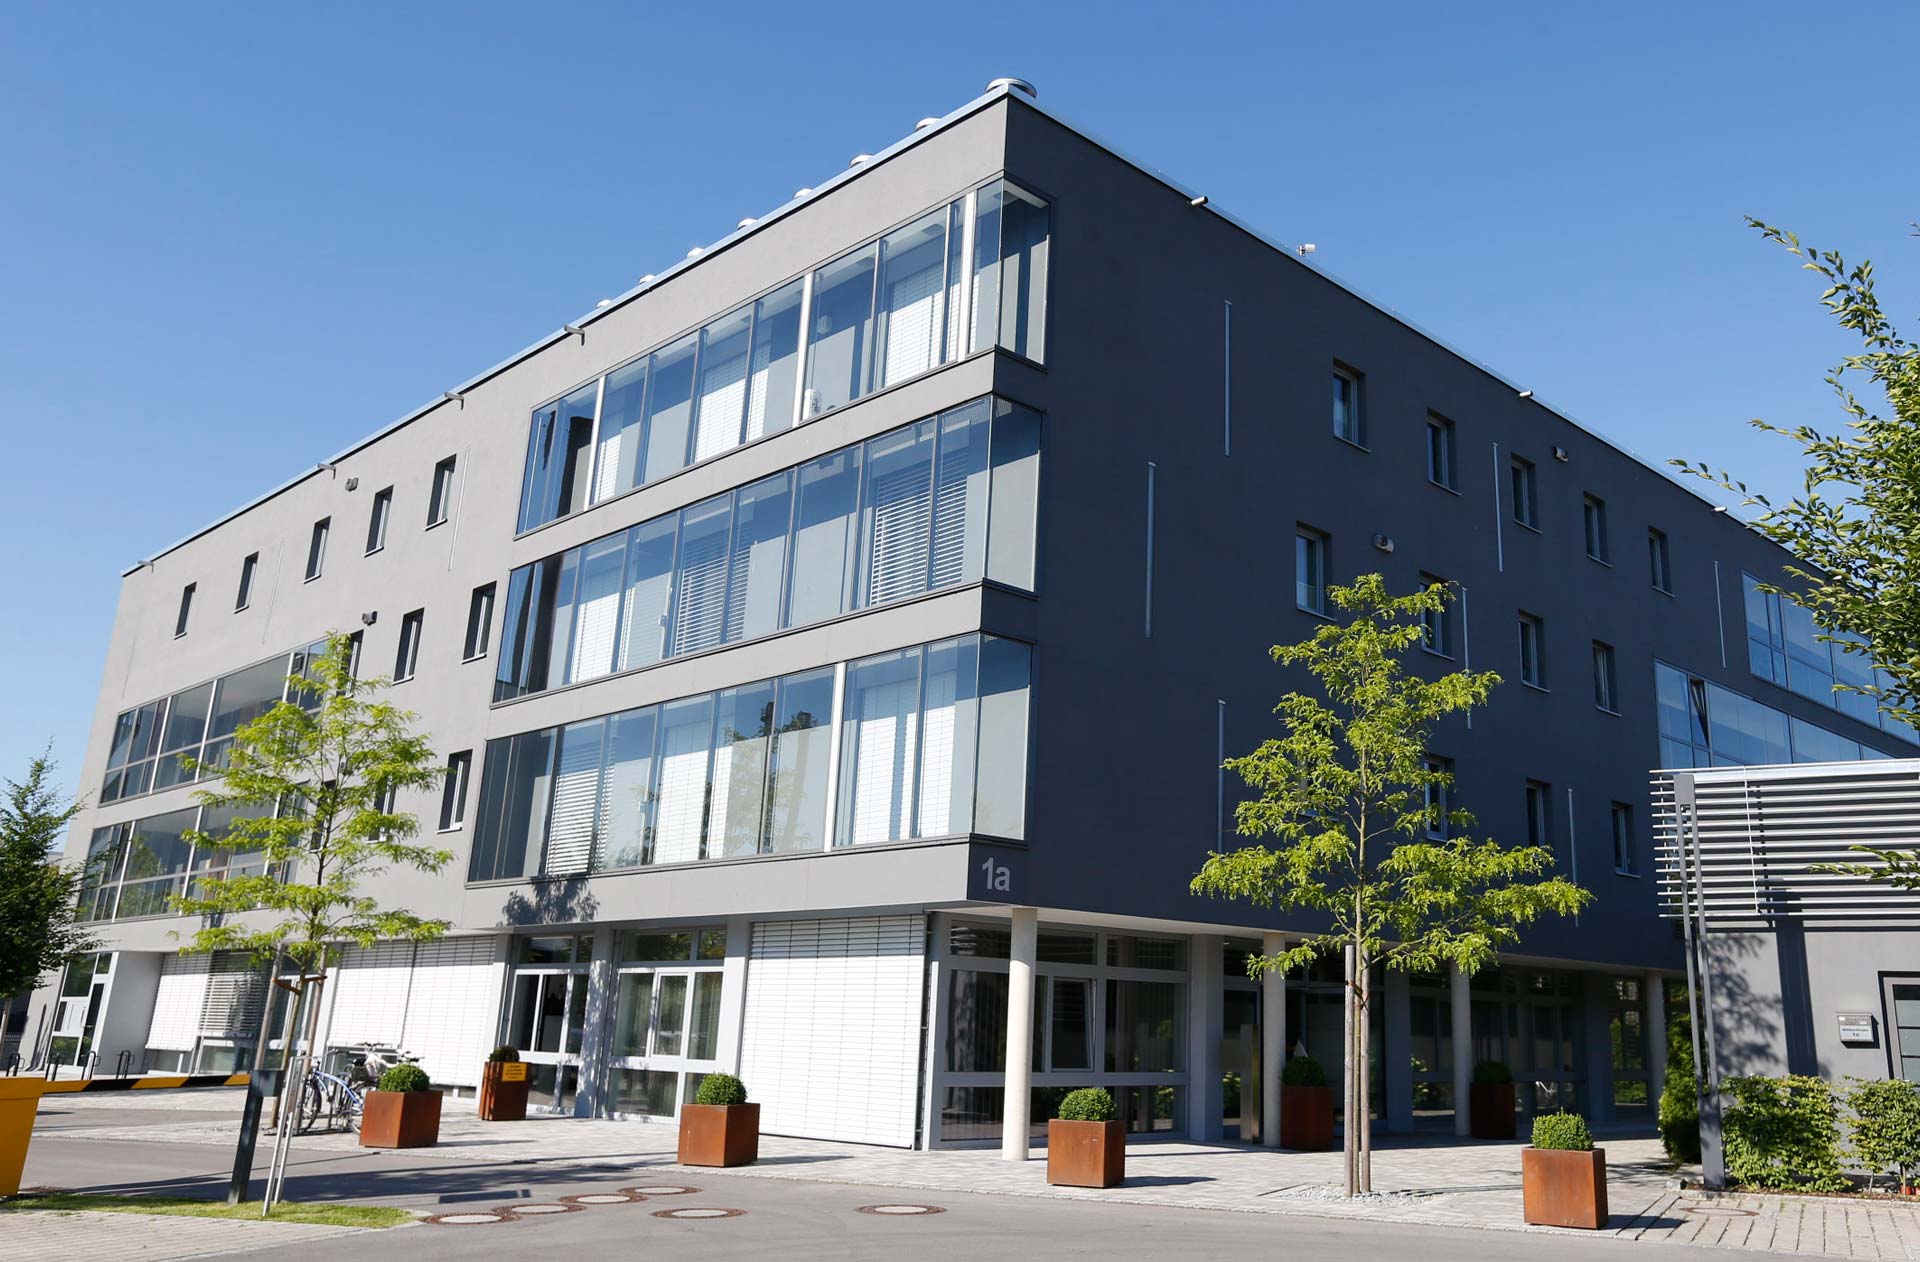 Rechtsanwälte Möller am Mühlbachbogen in Rosenheim - Gebäudeansicht Kanzlei von außen